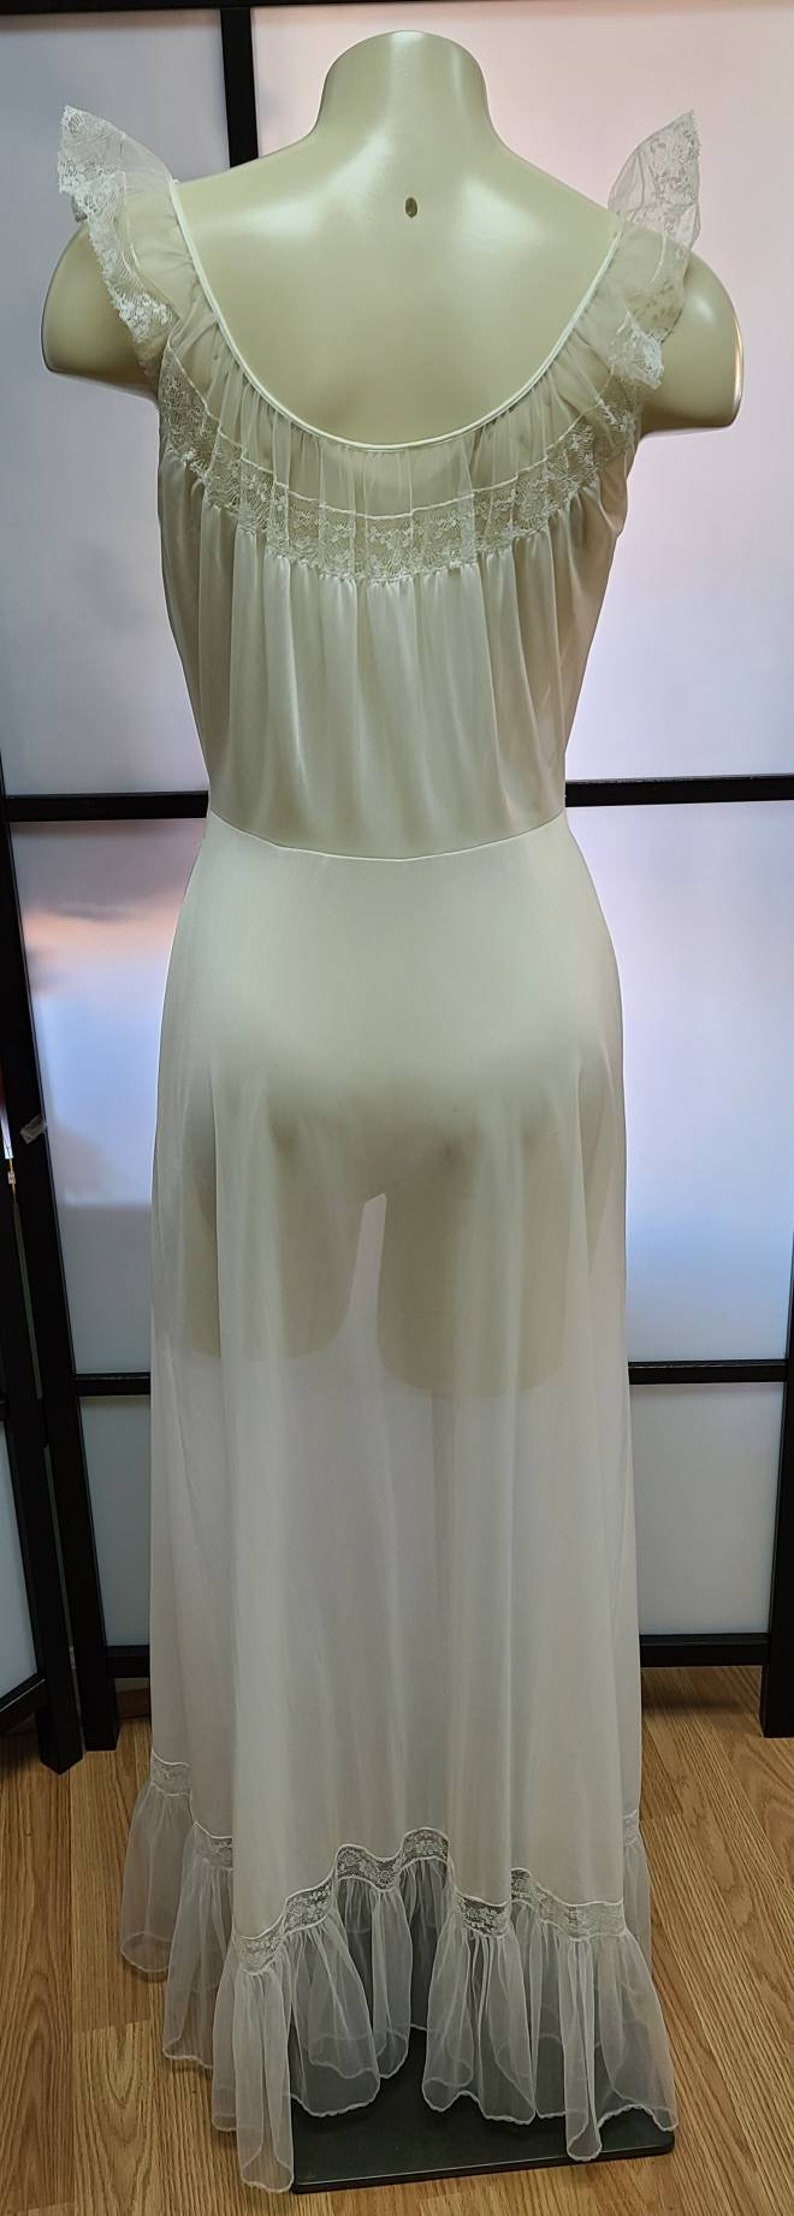 Vintage 1950s Nightgown Long Vanity Fair Semi Sheer White | Etsy